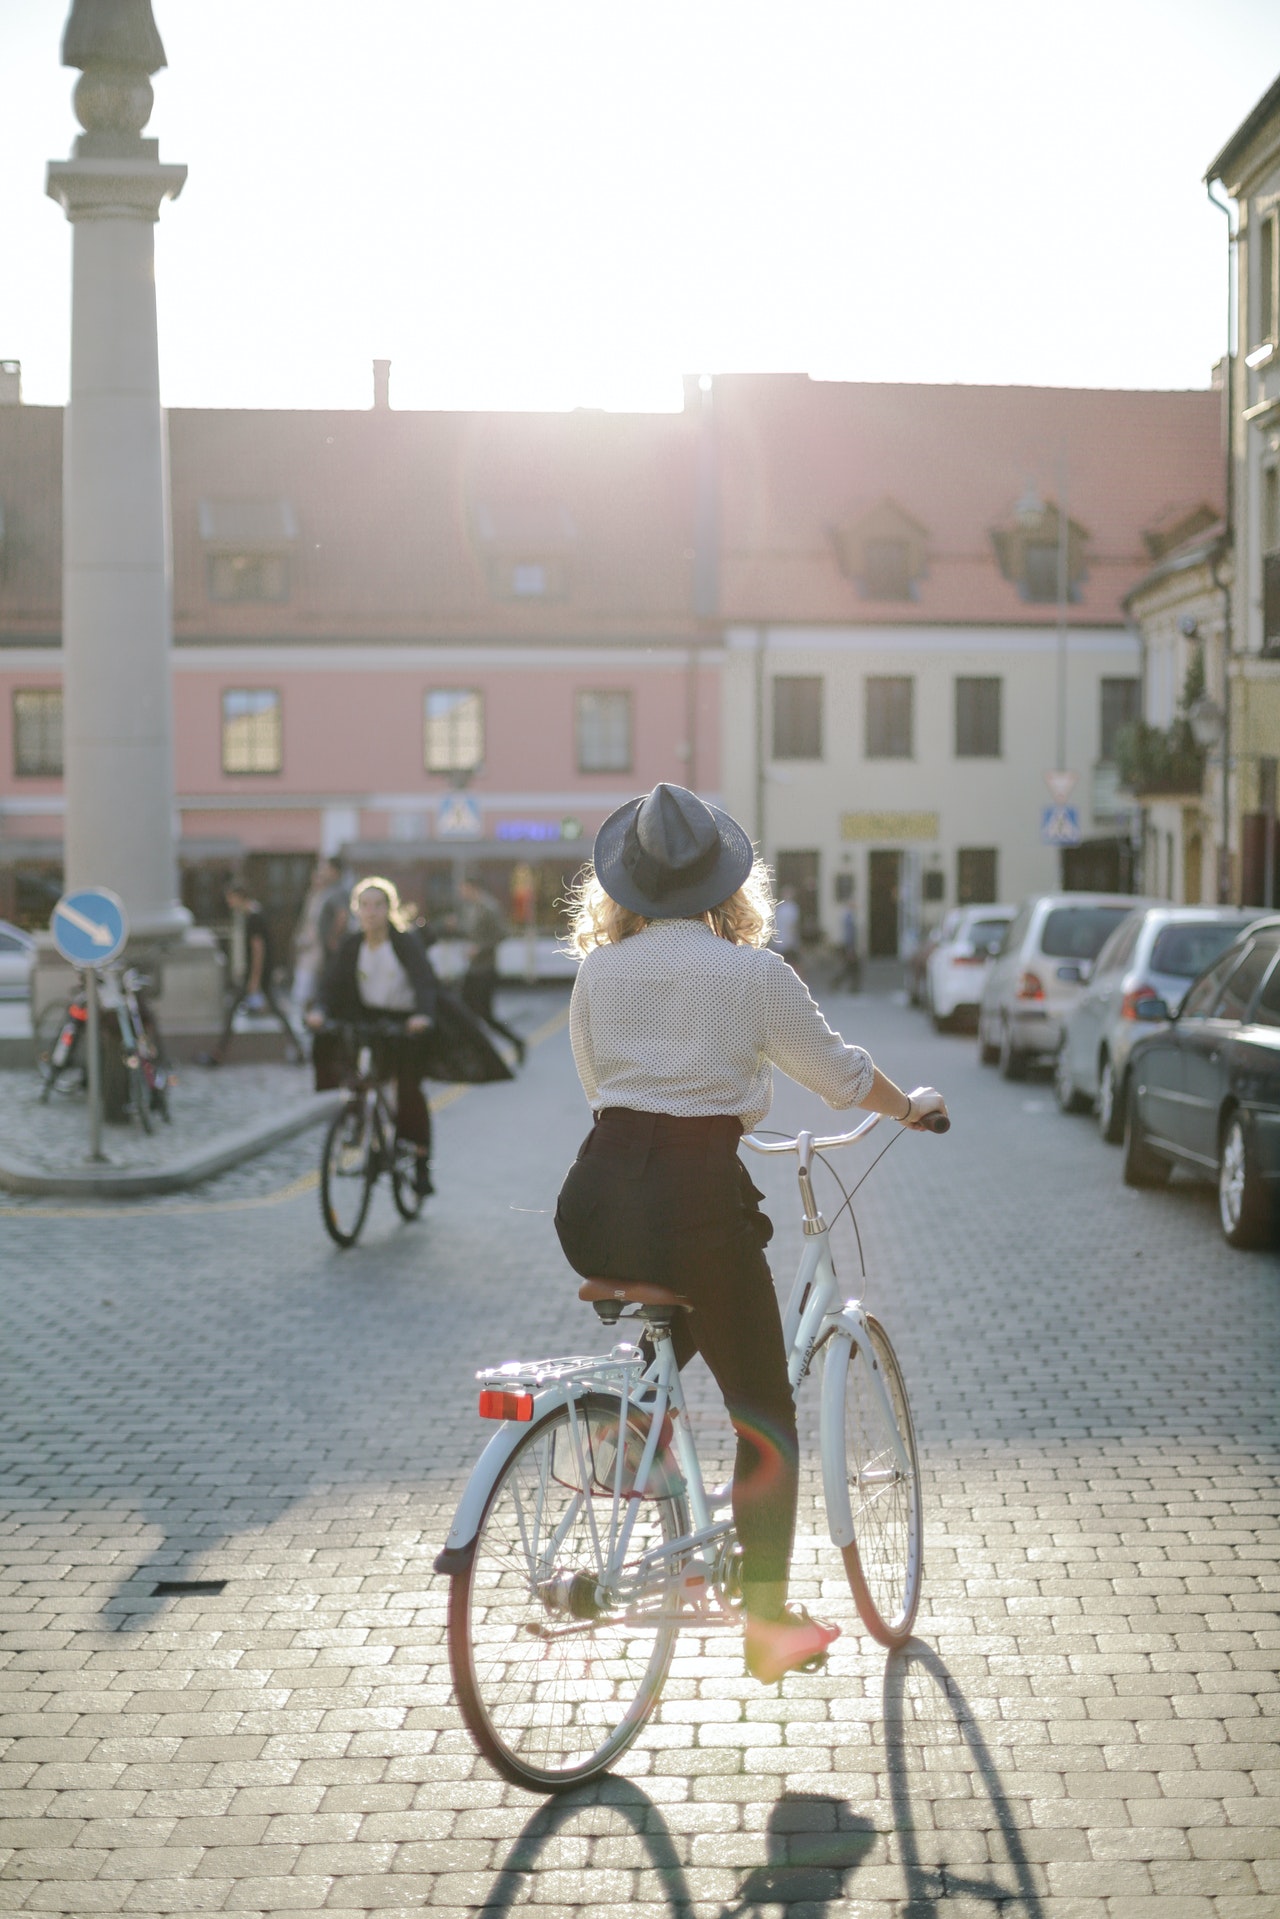 Si vas a trasladarte a un lugar cercano, puedes rentar una bici | Foto: Pexels